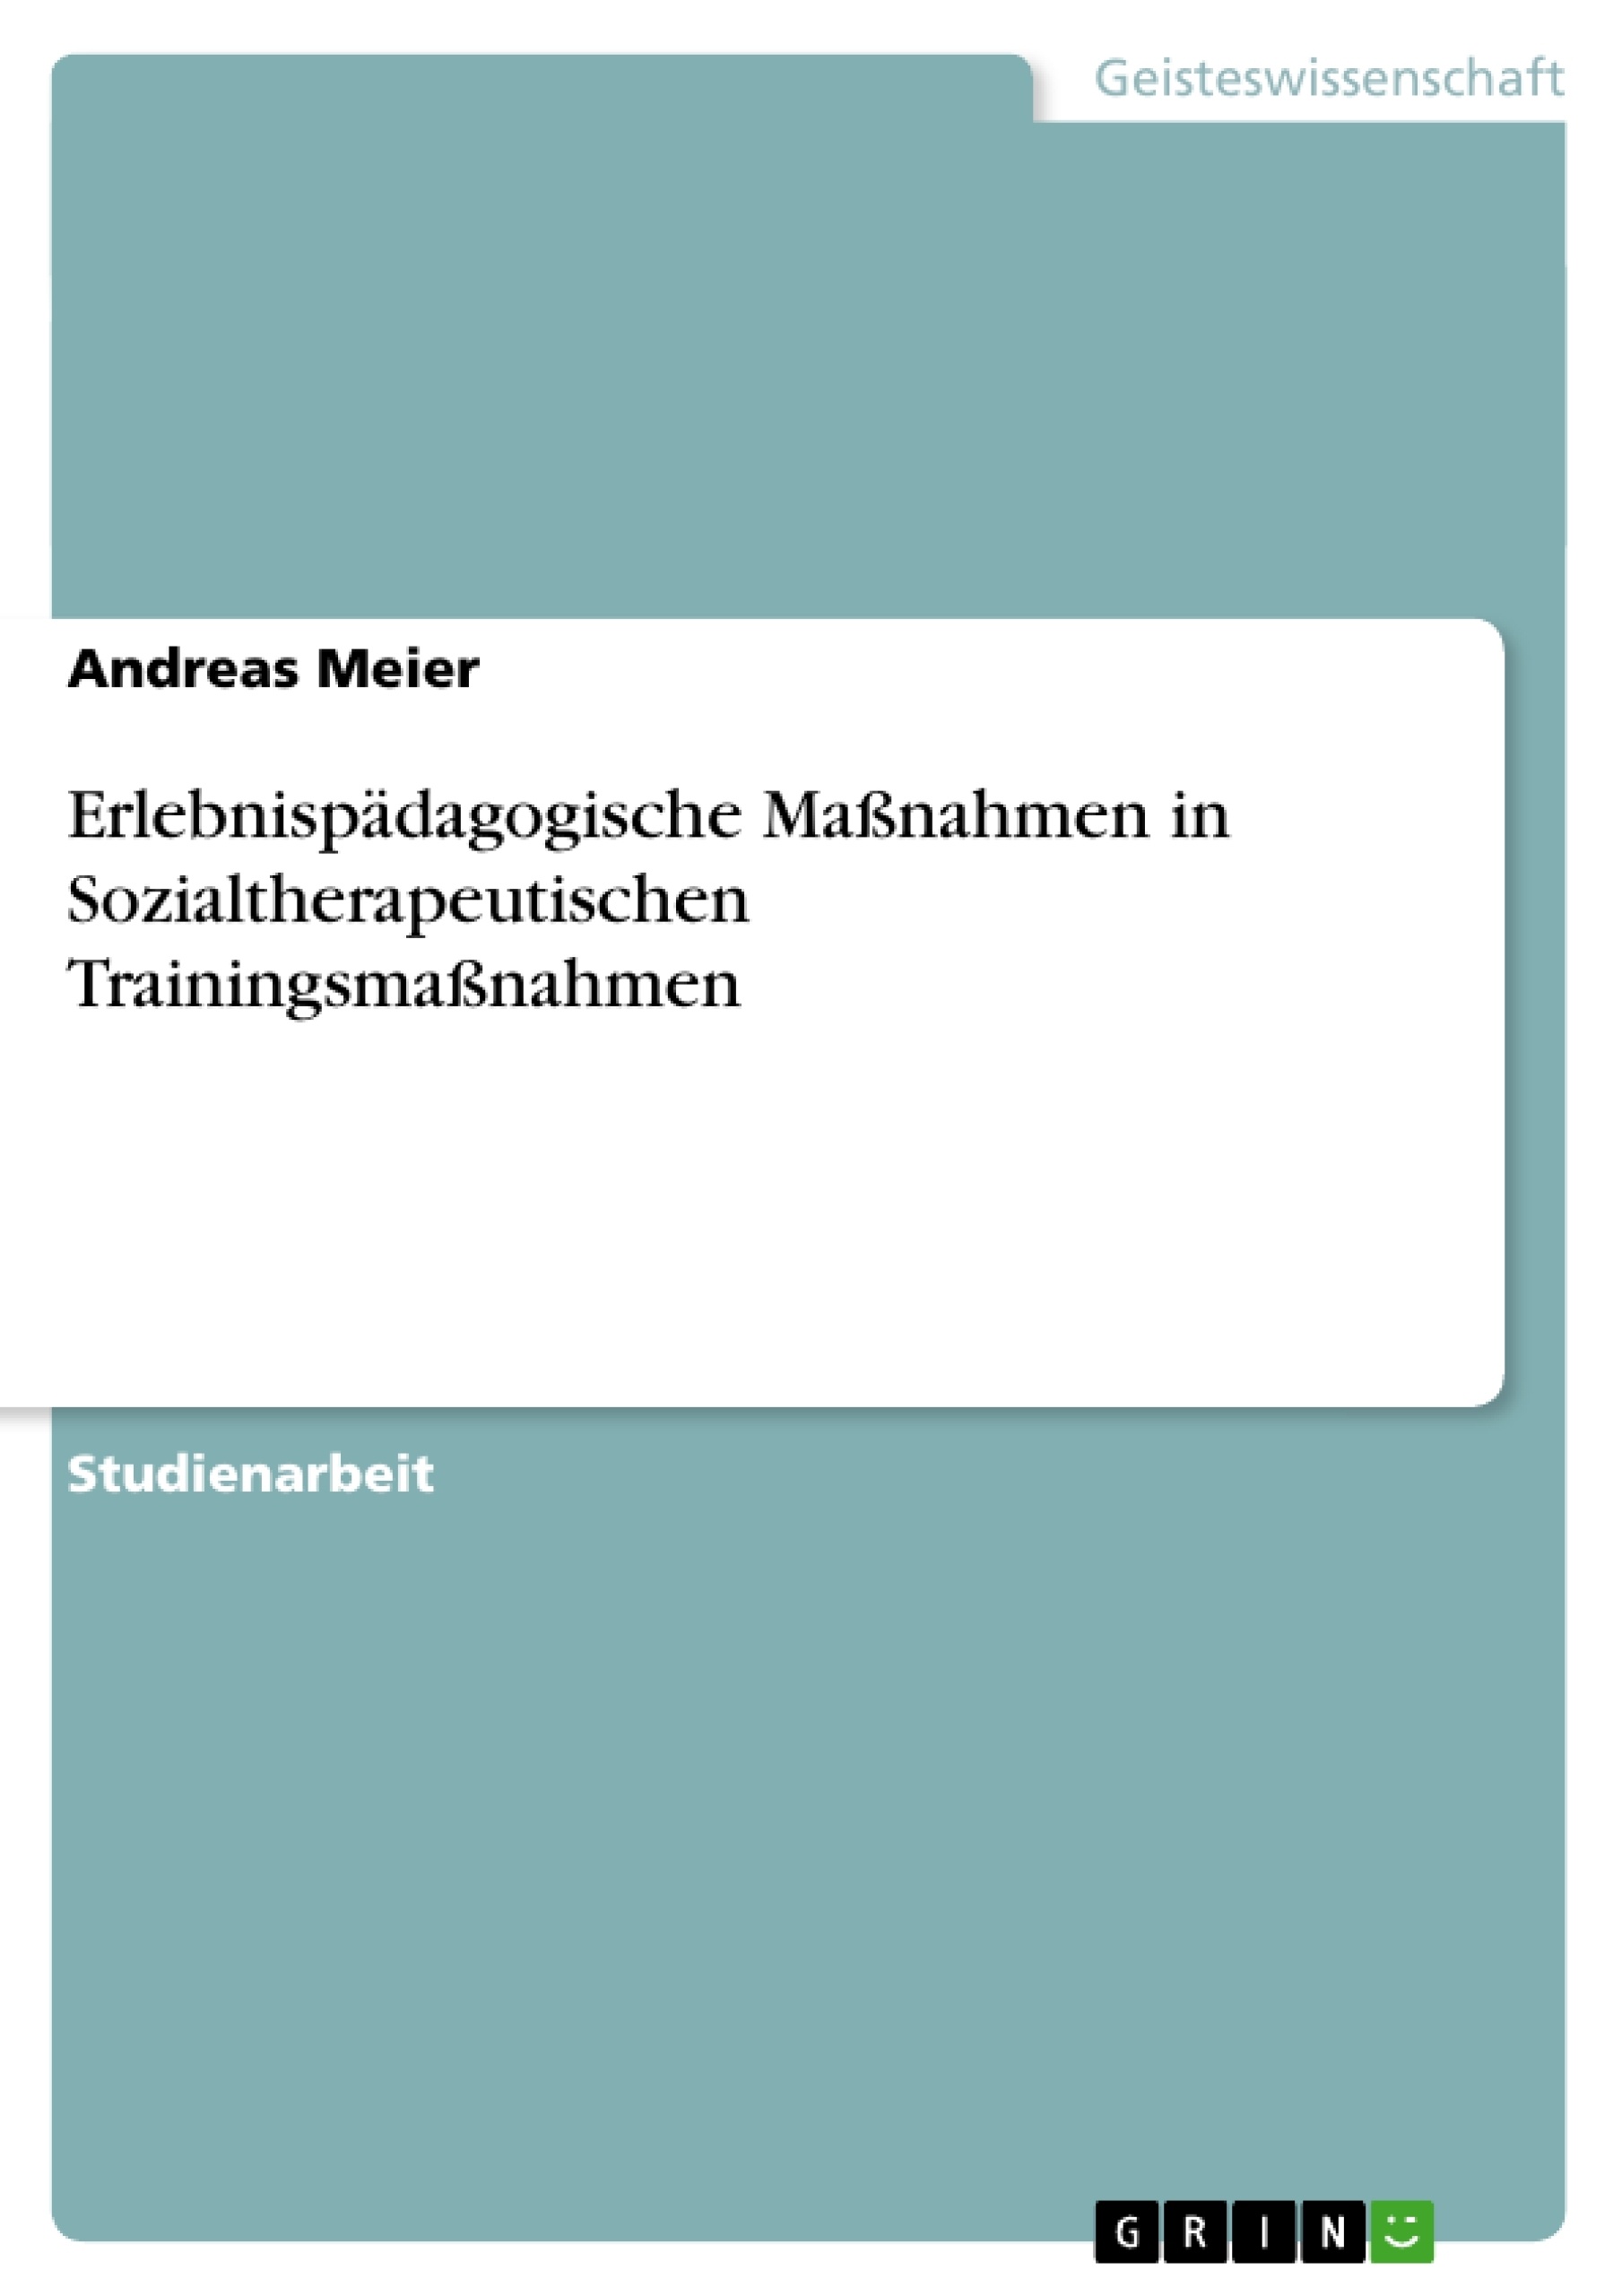 Title: Erlebnispädagogische Maßnahmen in Sozialtherapeutischen Trainingsmaßnahmen